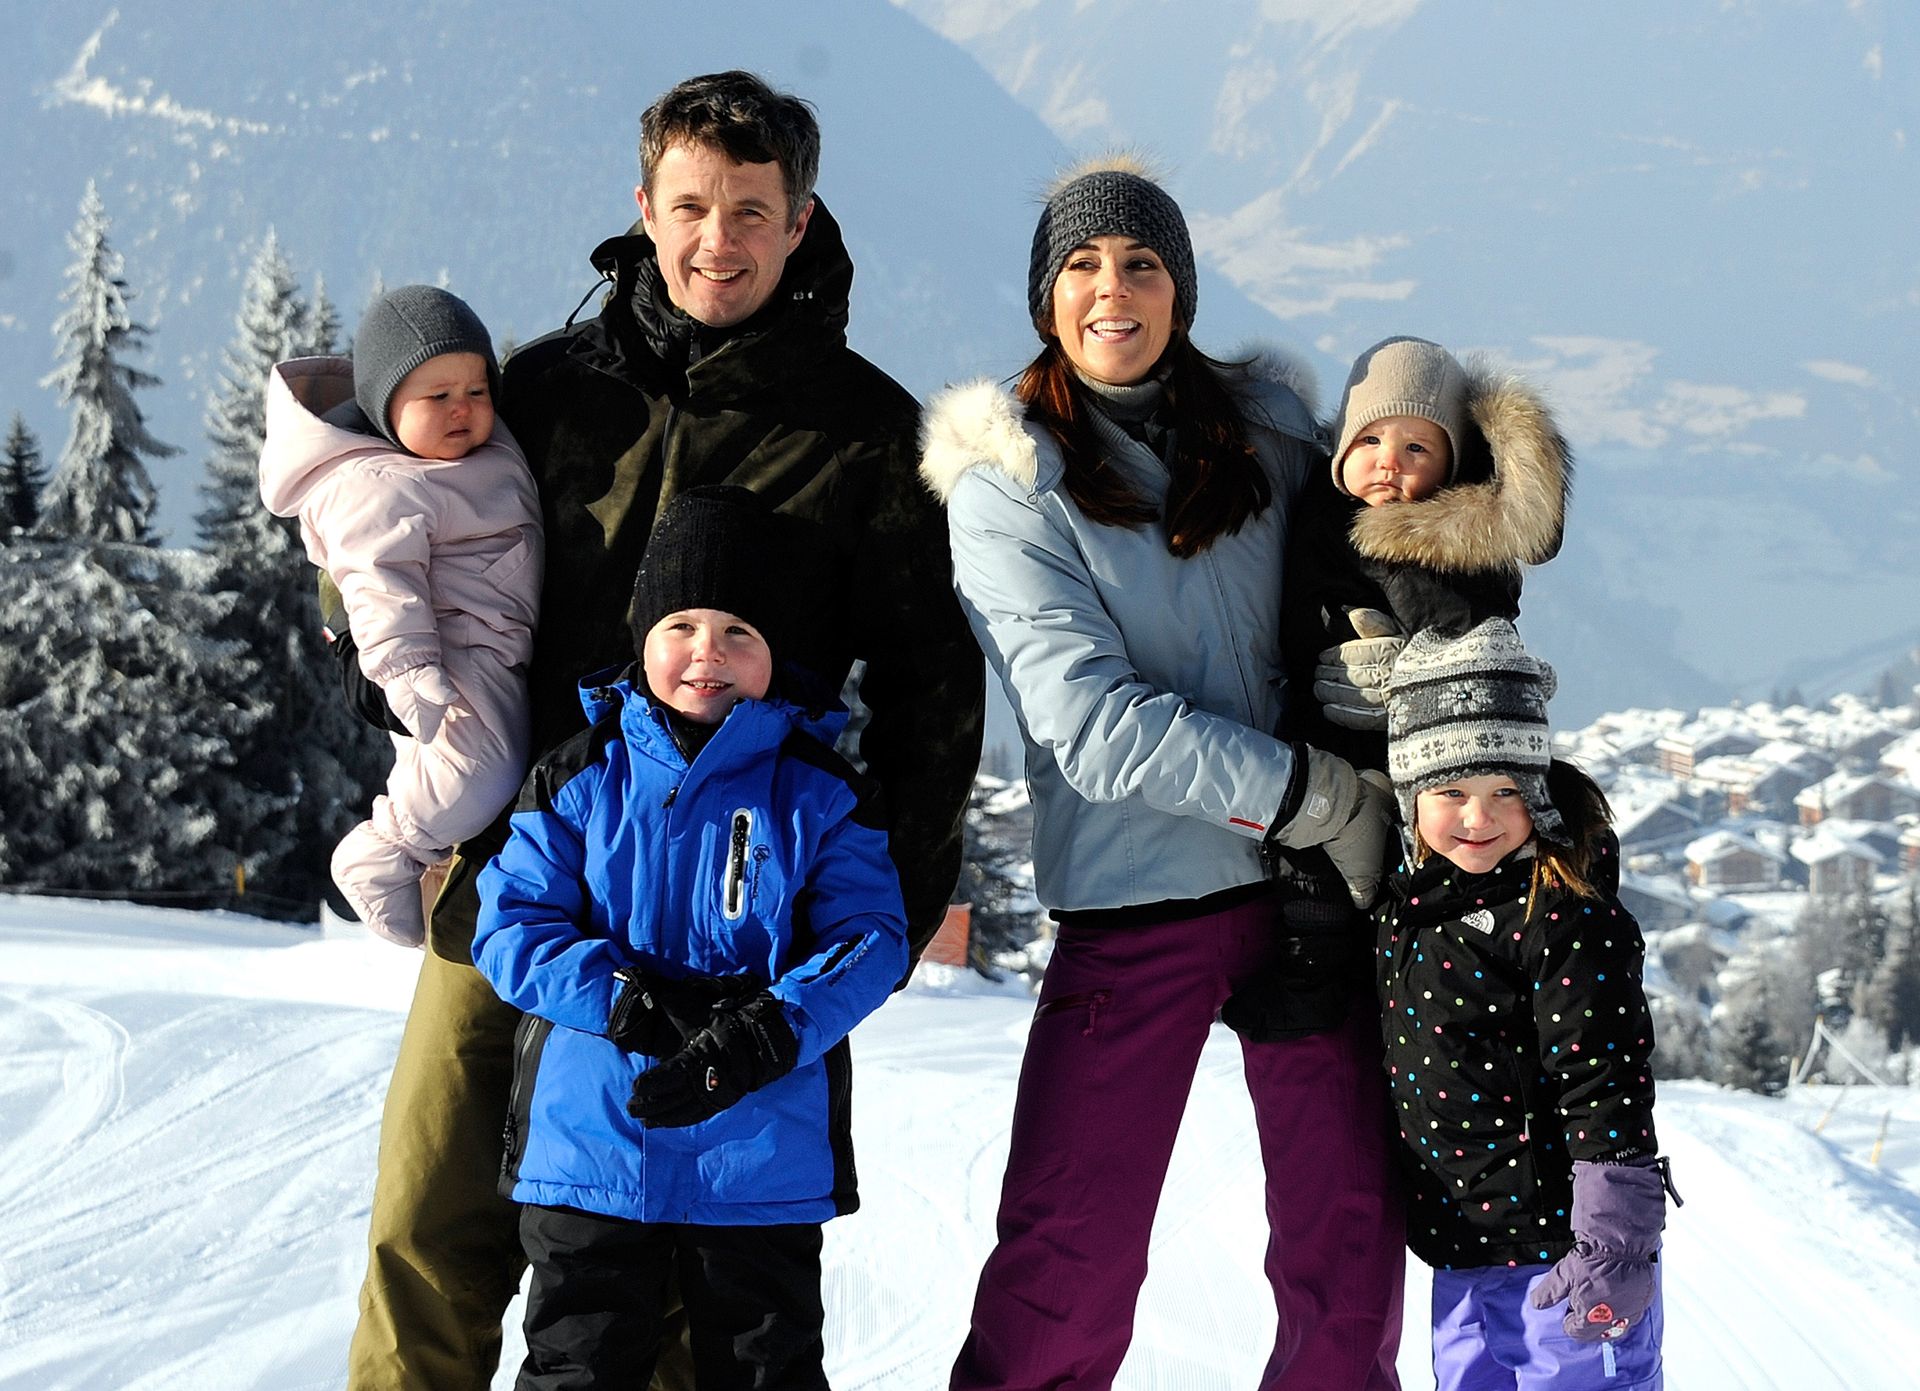 Het gezin van Frederik en Mary in 2012 op skivakantie in Zwitserland.